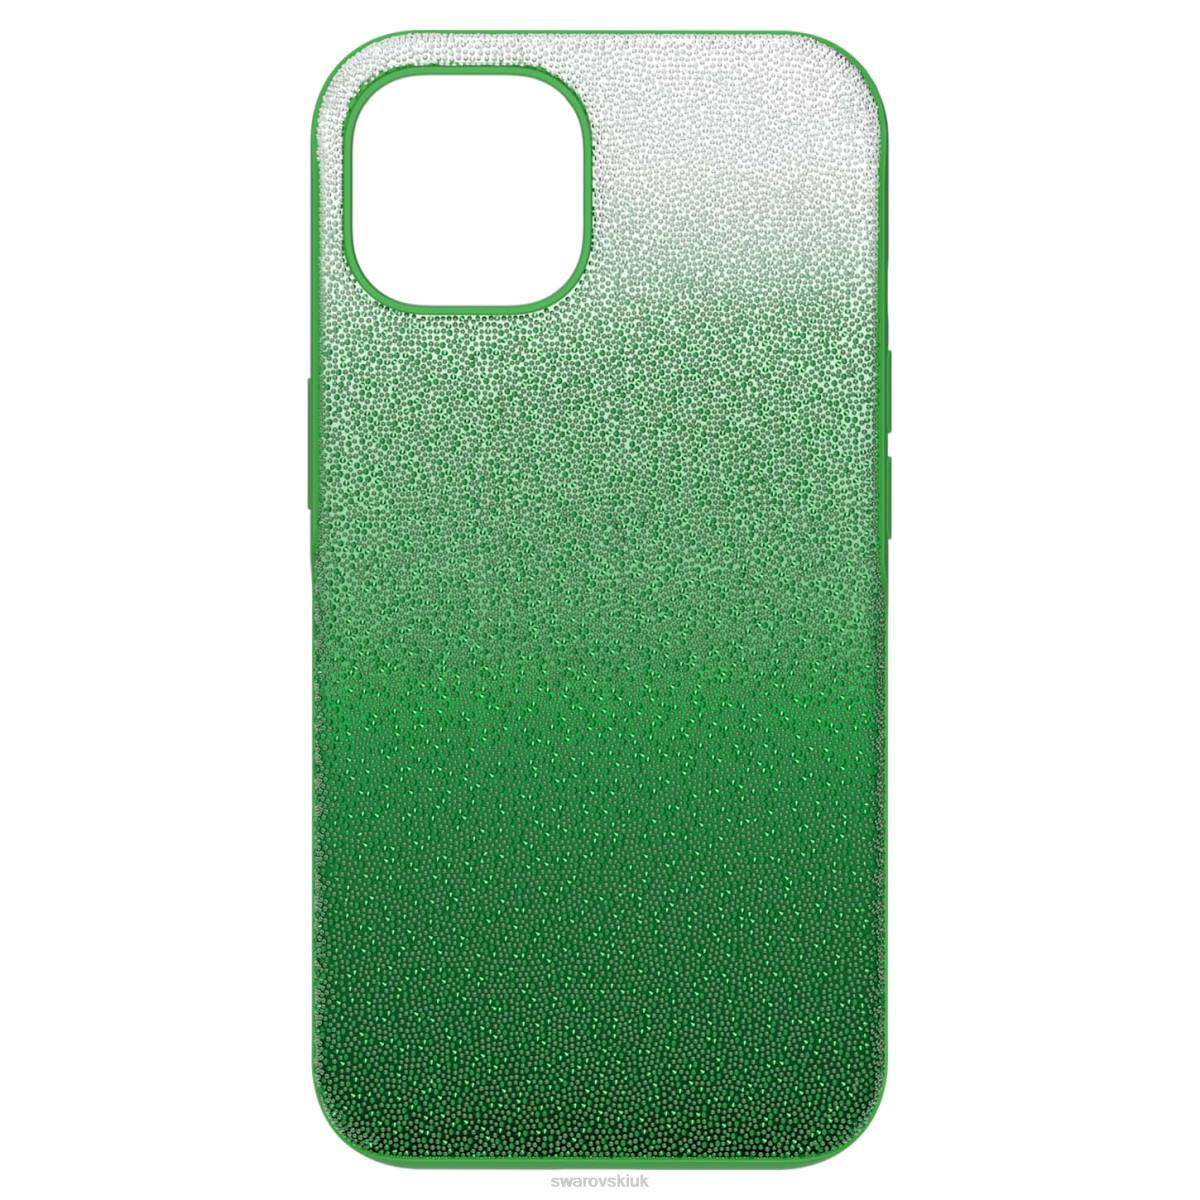 Accessories Swarovski High smartphone case Green 48JX1377